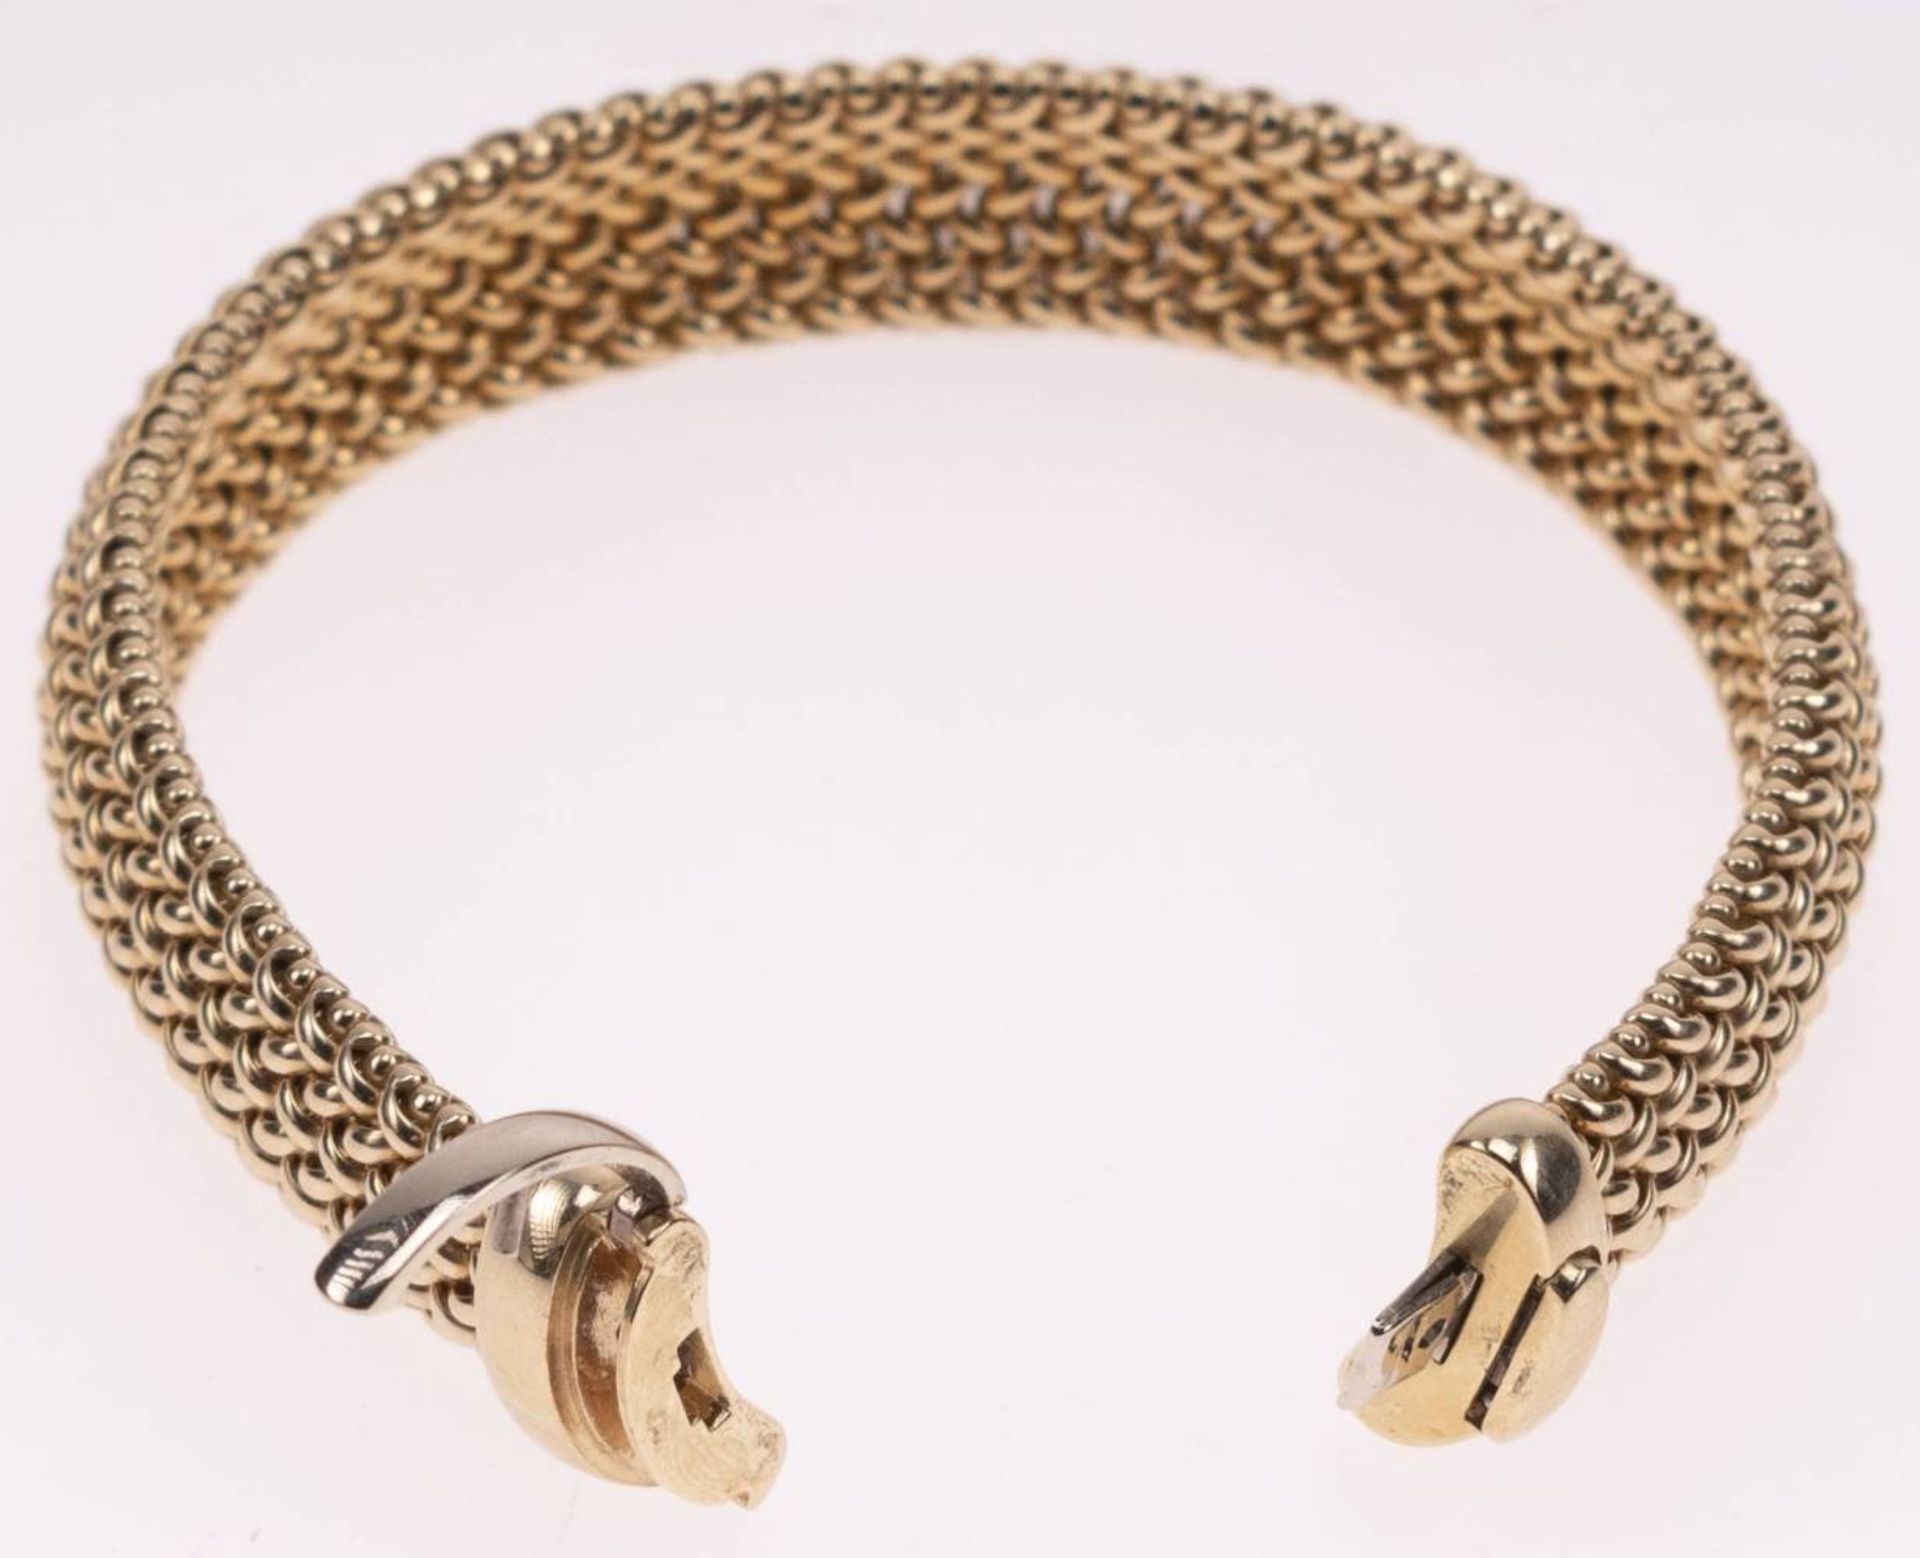 Milanaise Armband, 585 Gelbgold, Länge 19,5cm, Steckschließe mit Clipverschluss, fast ungetragen, - Image 6 of 6